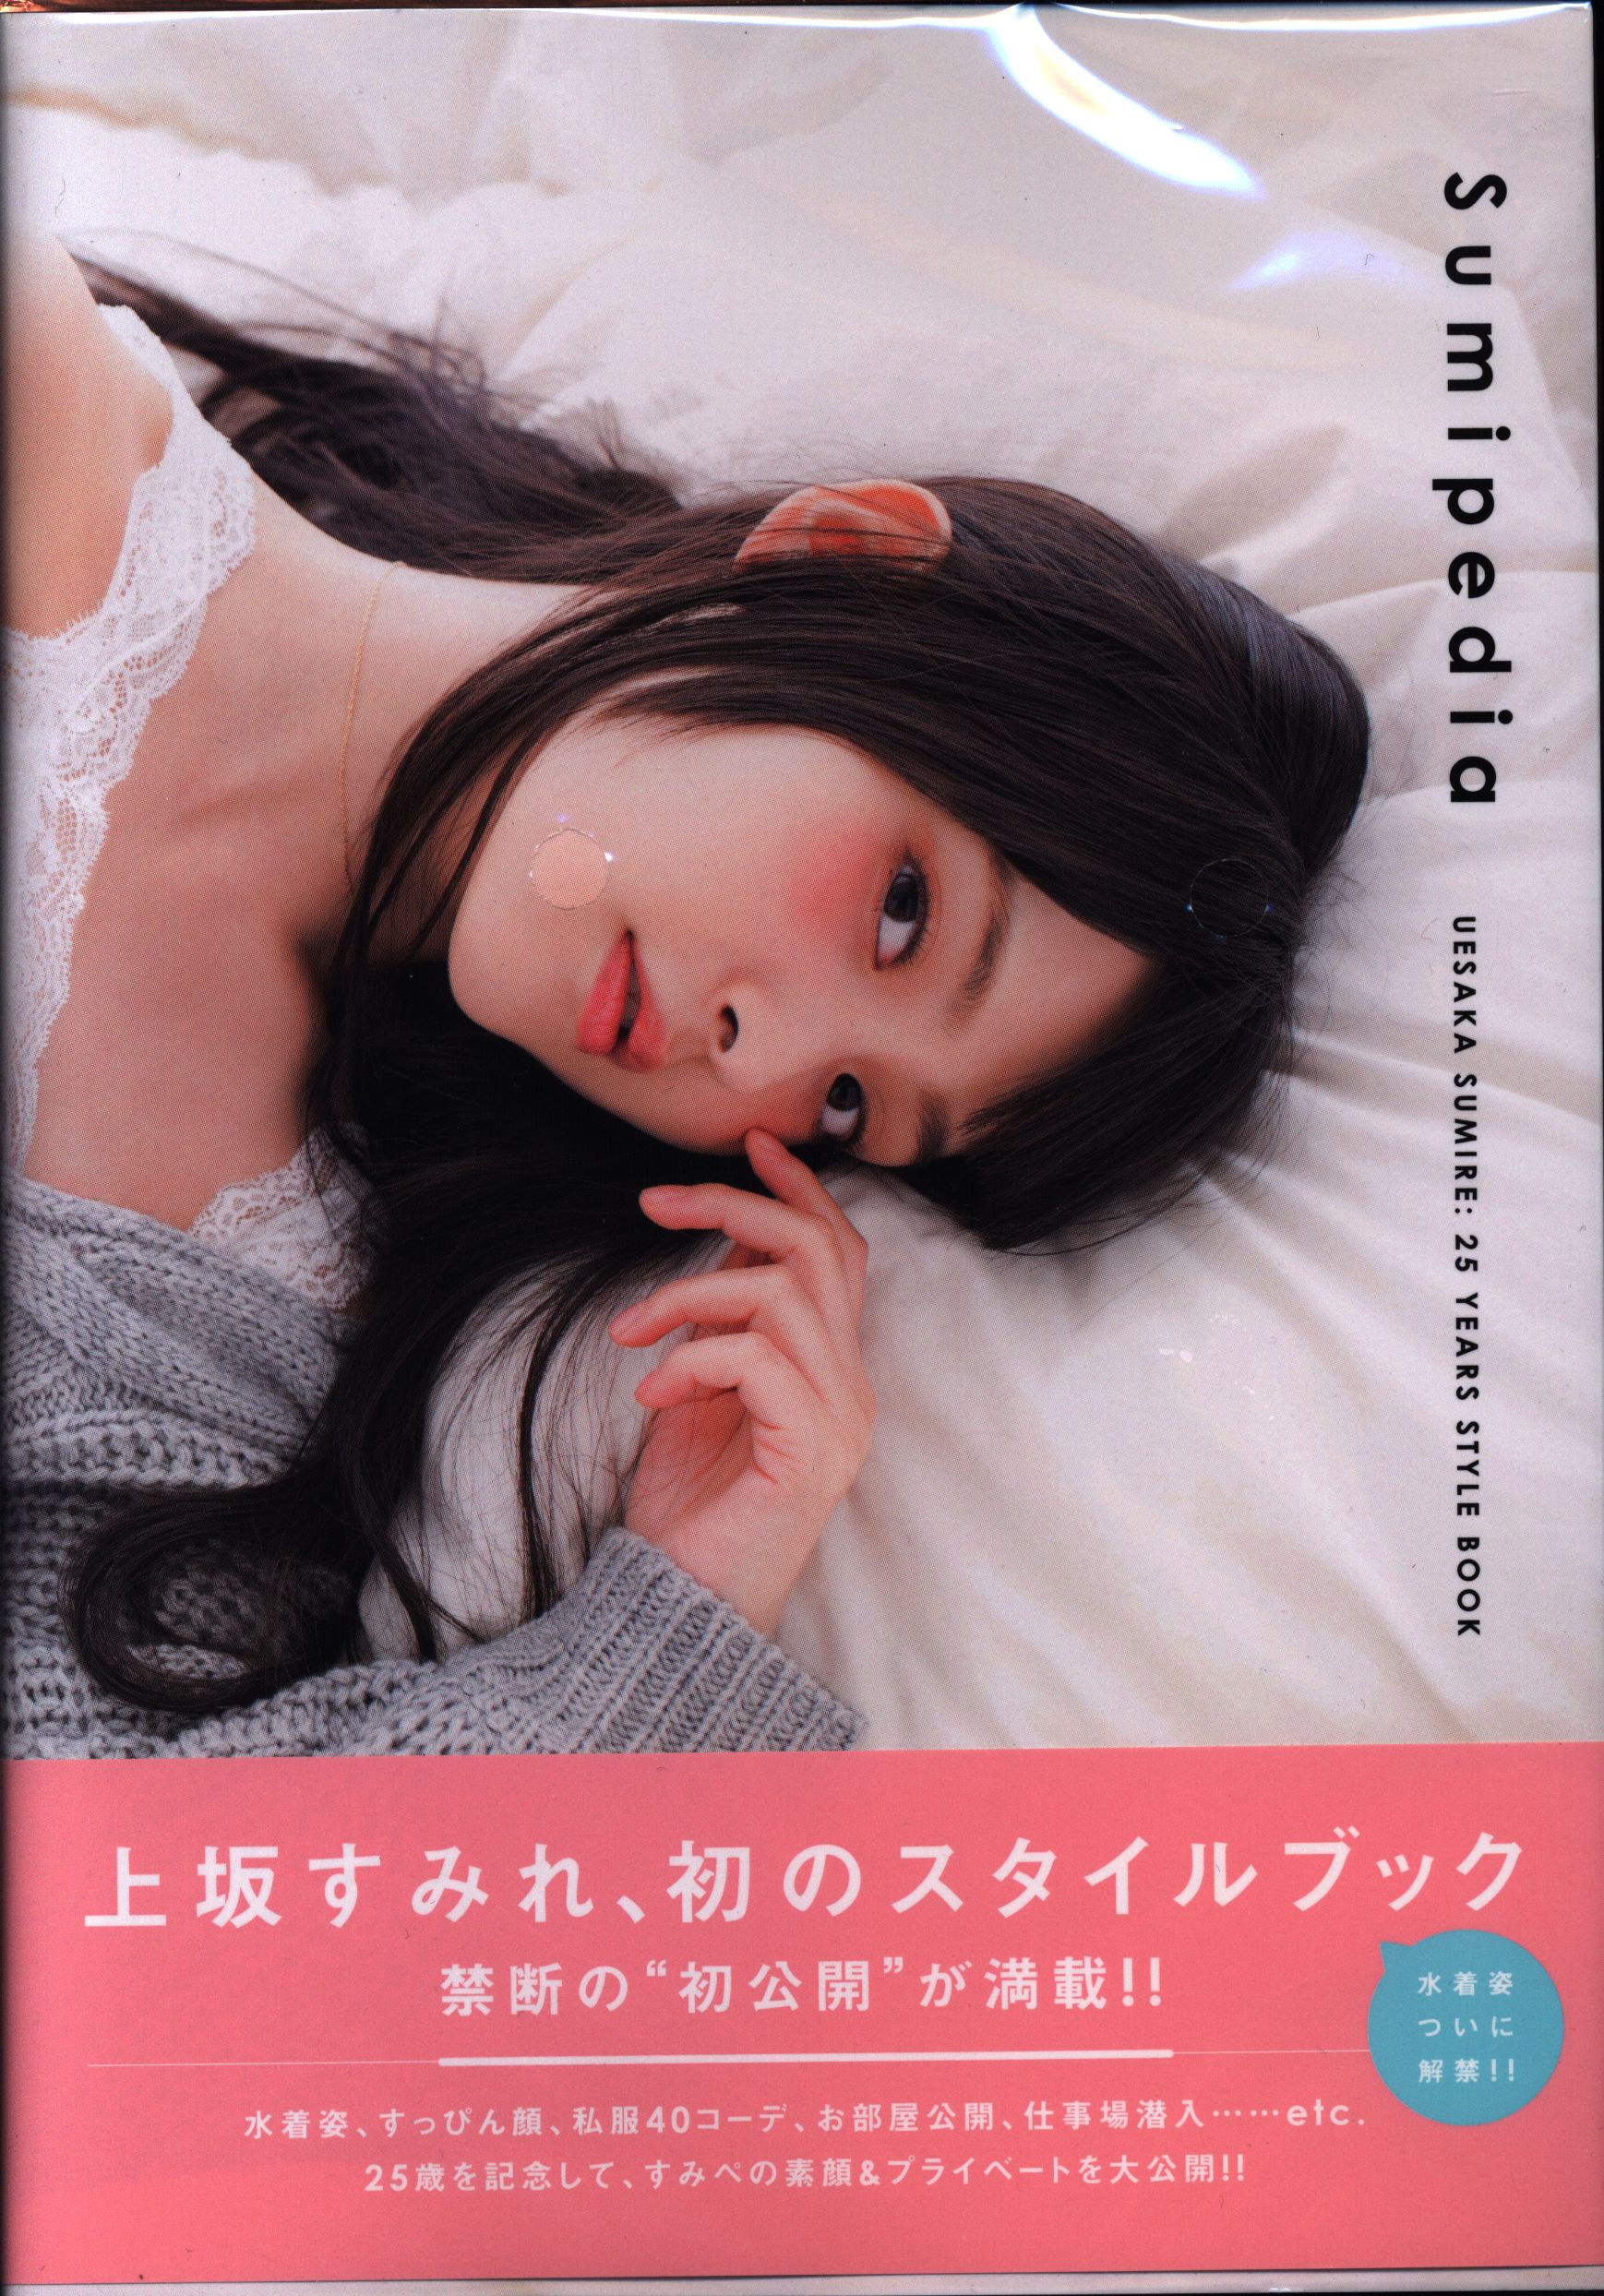 上坂すみれ 25YEARS STYLE BOOK Sumipedia - アート・デザイン・音楽